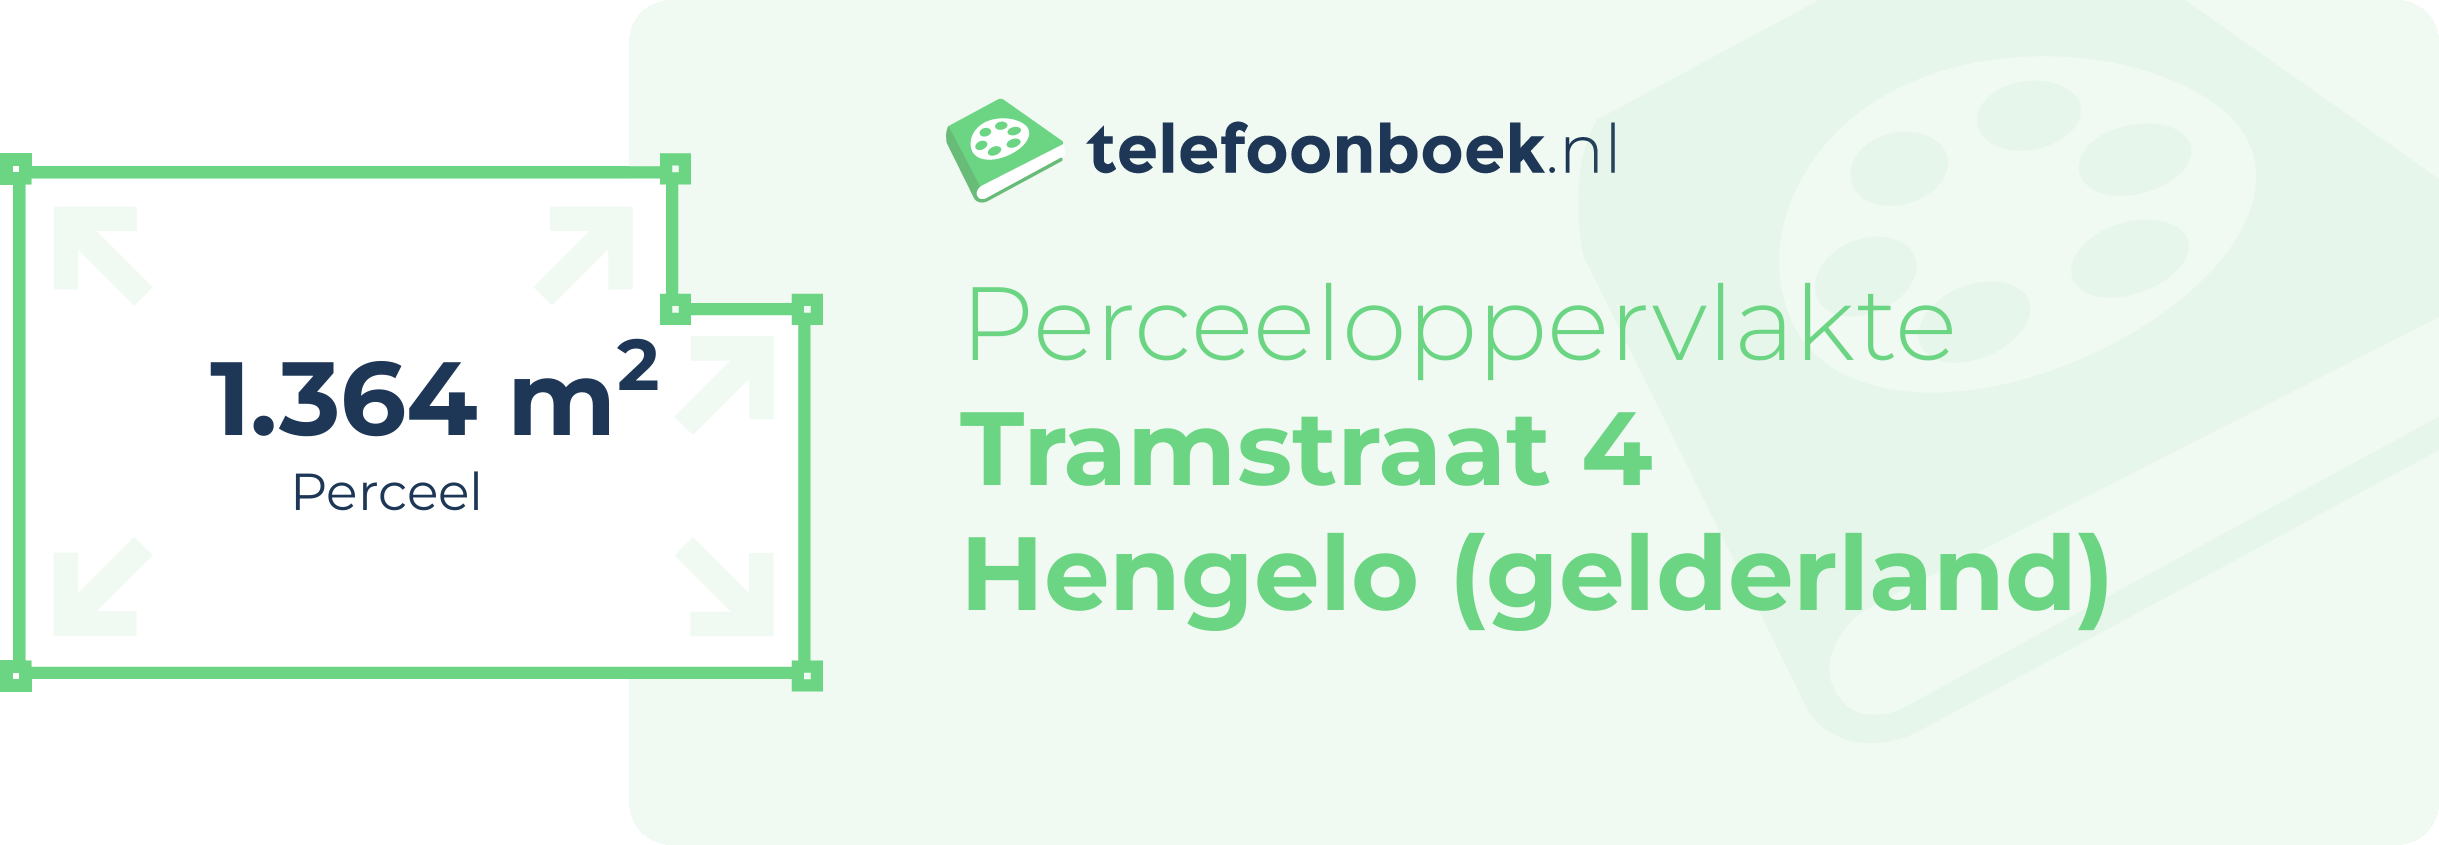 Perceeloppervlakte Tramstraat 4 Hengelo (Gelderland)